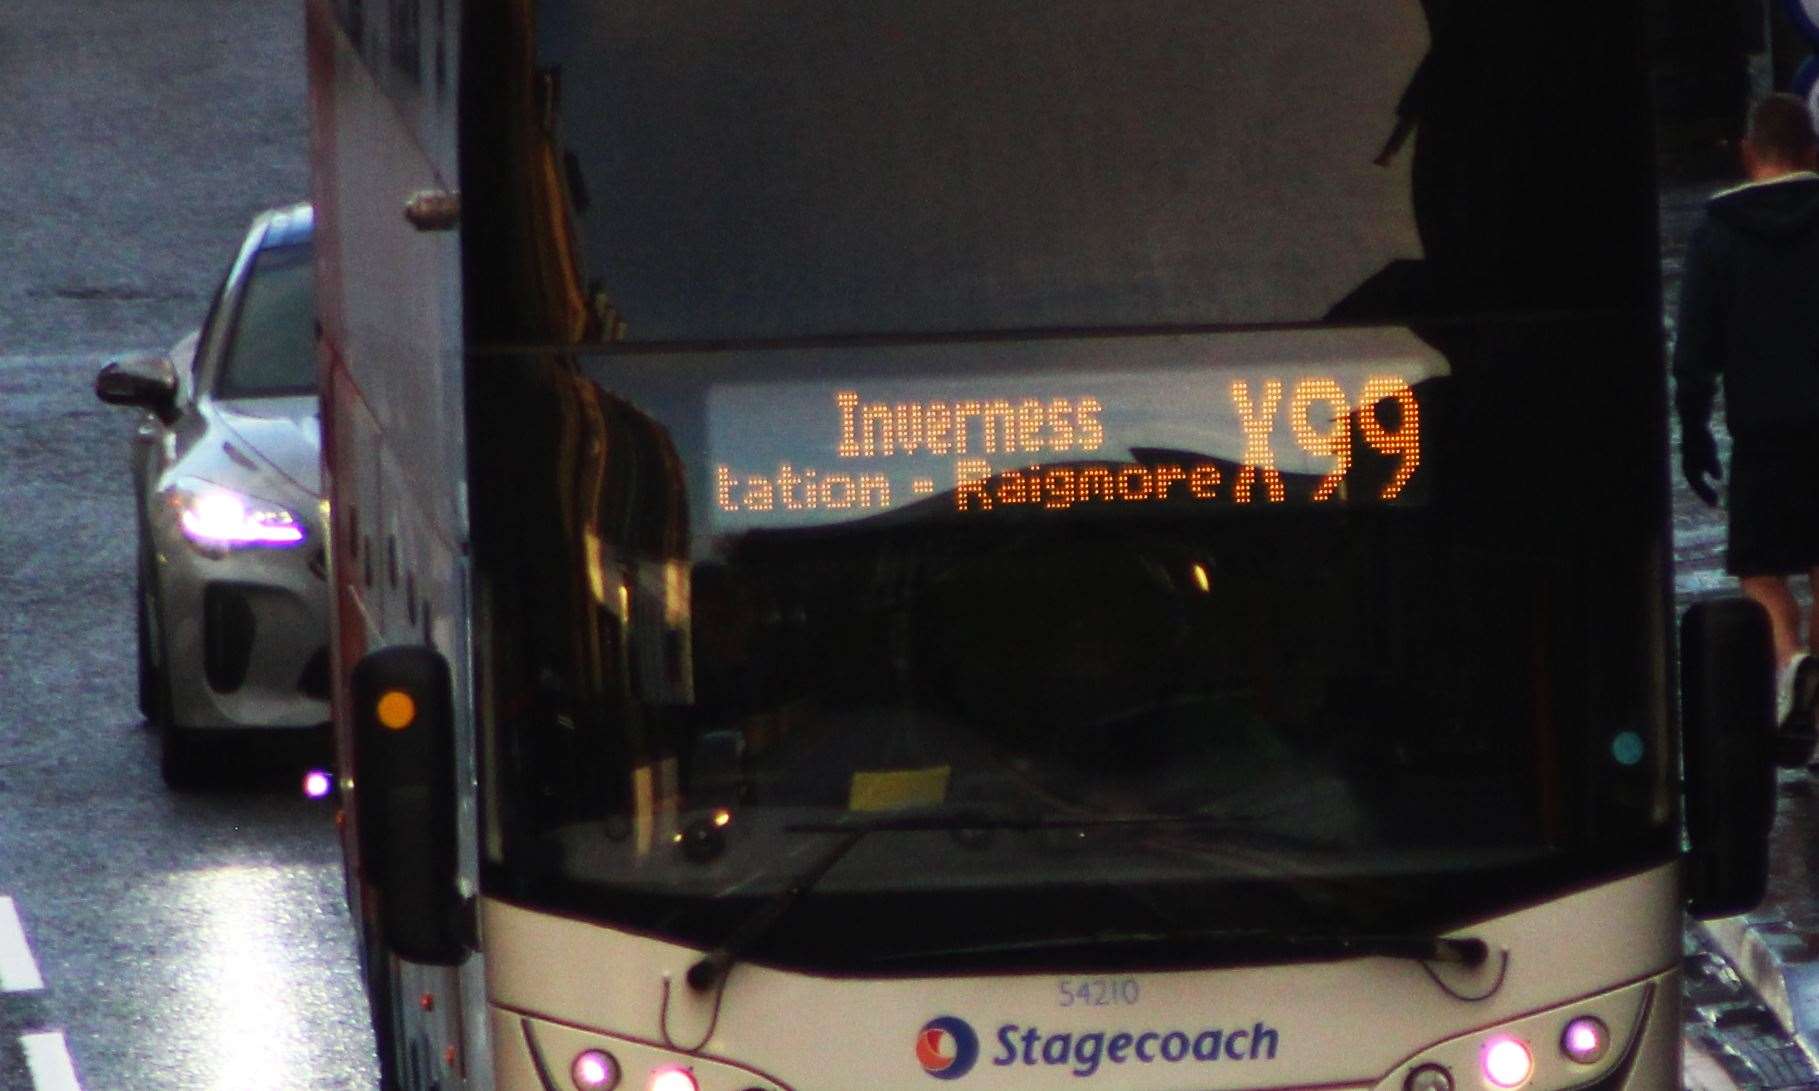 Stagecoach X99 bus